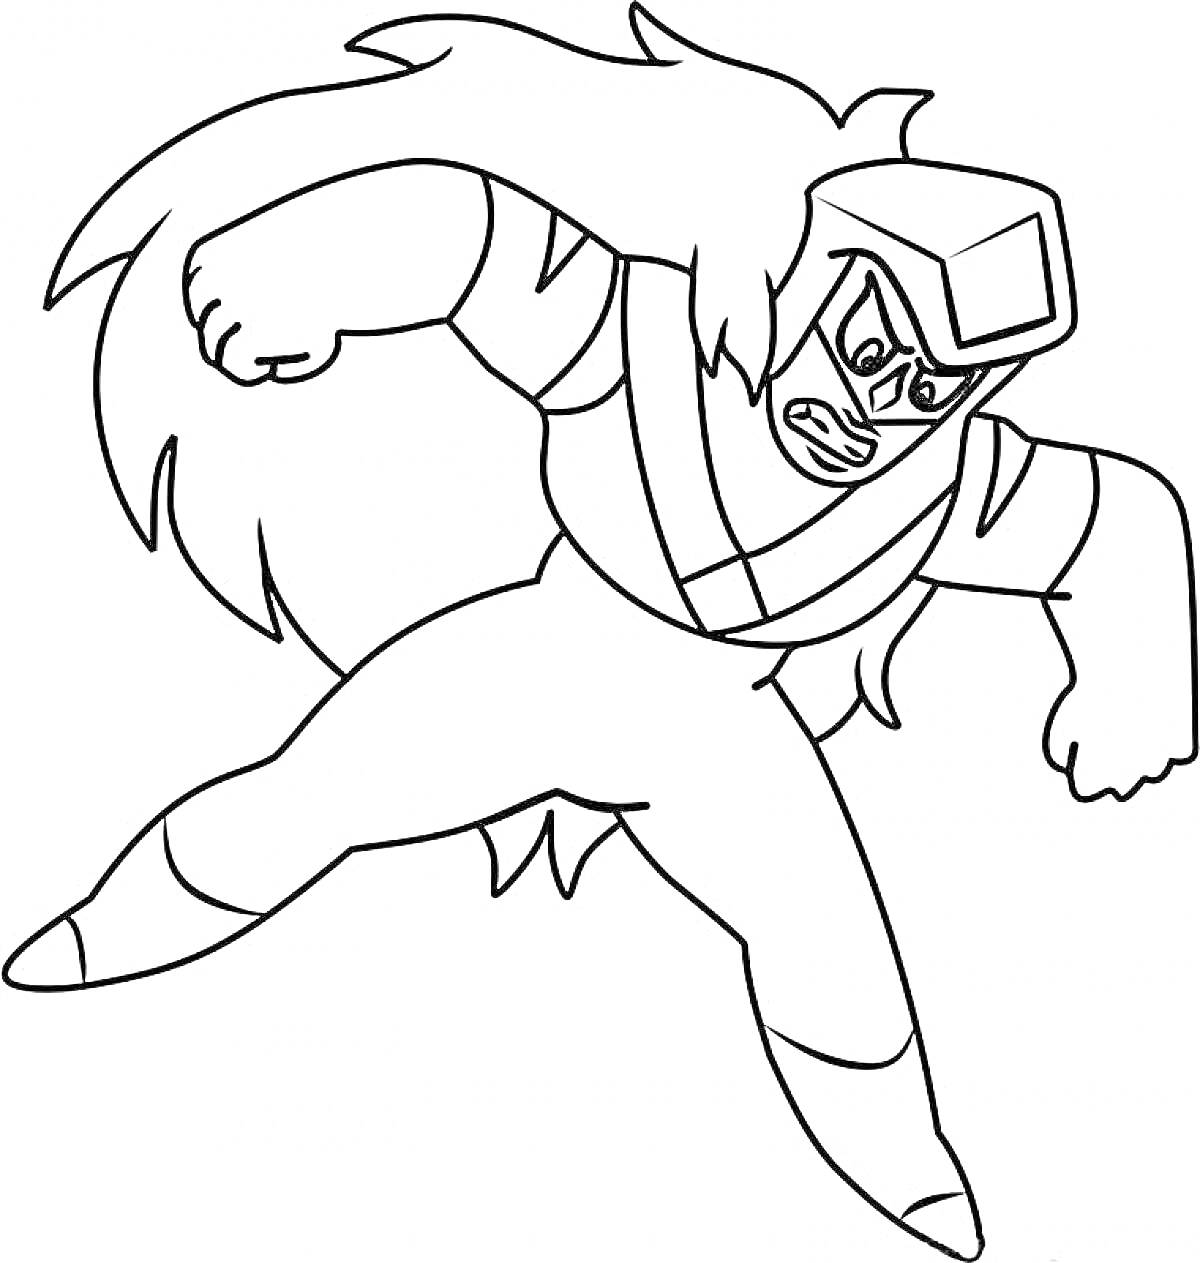 Грозный персонаж из Вселенной Стивена с длинными волосами и защитной маской, готовый к атаке